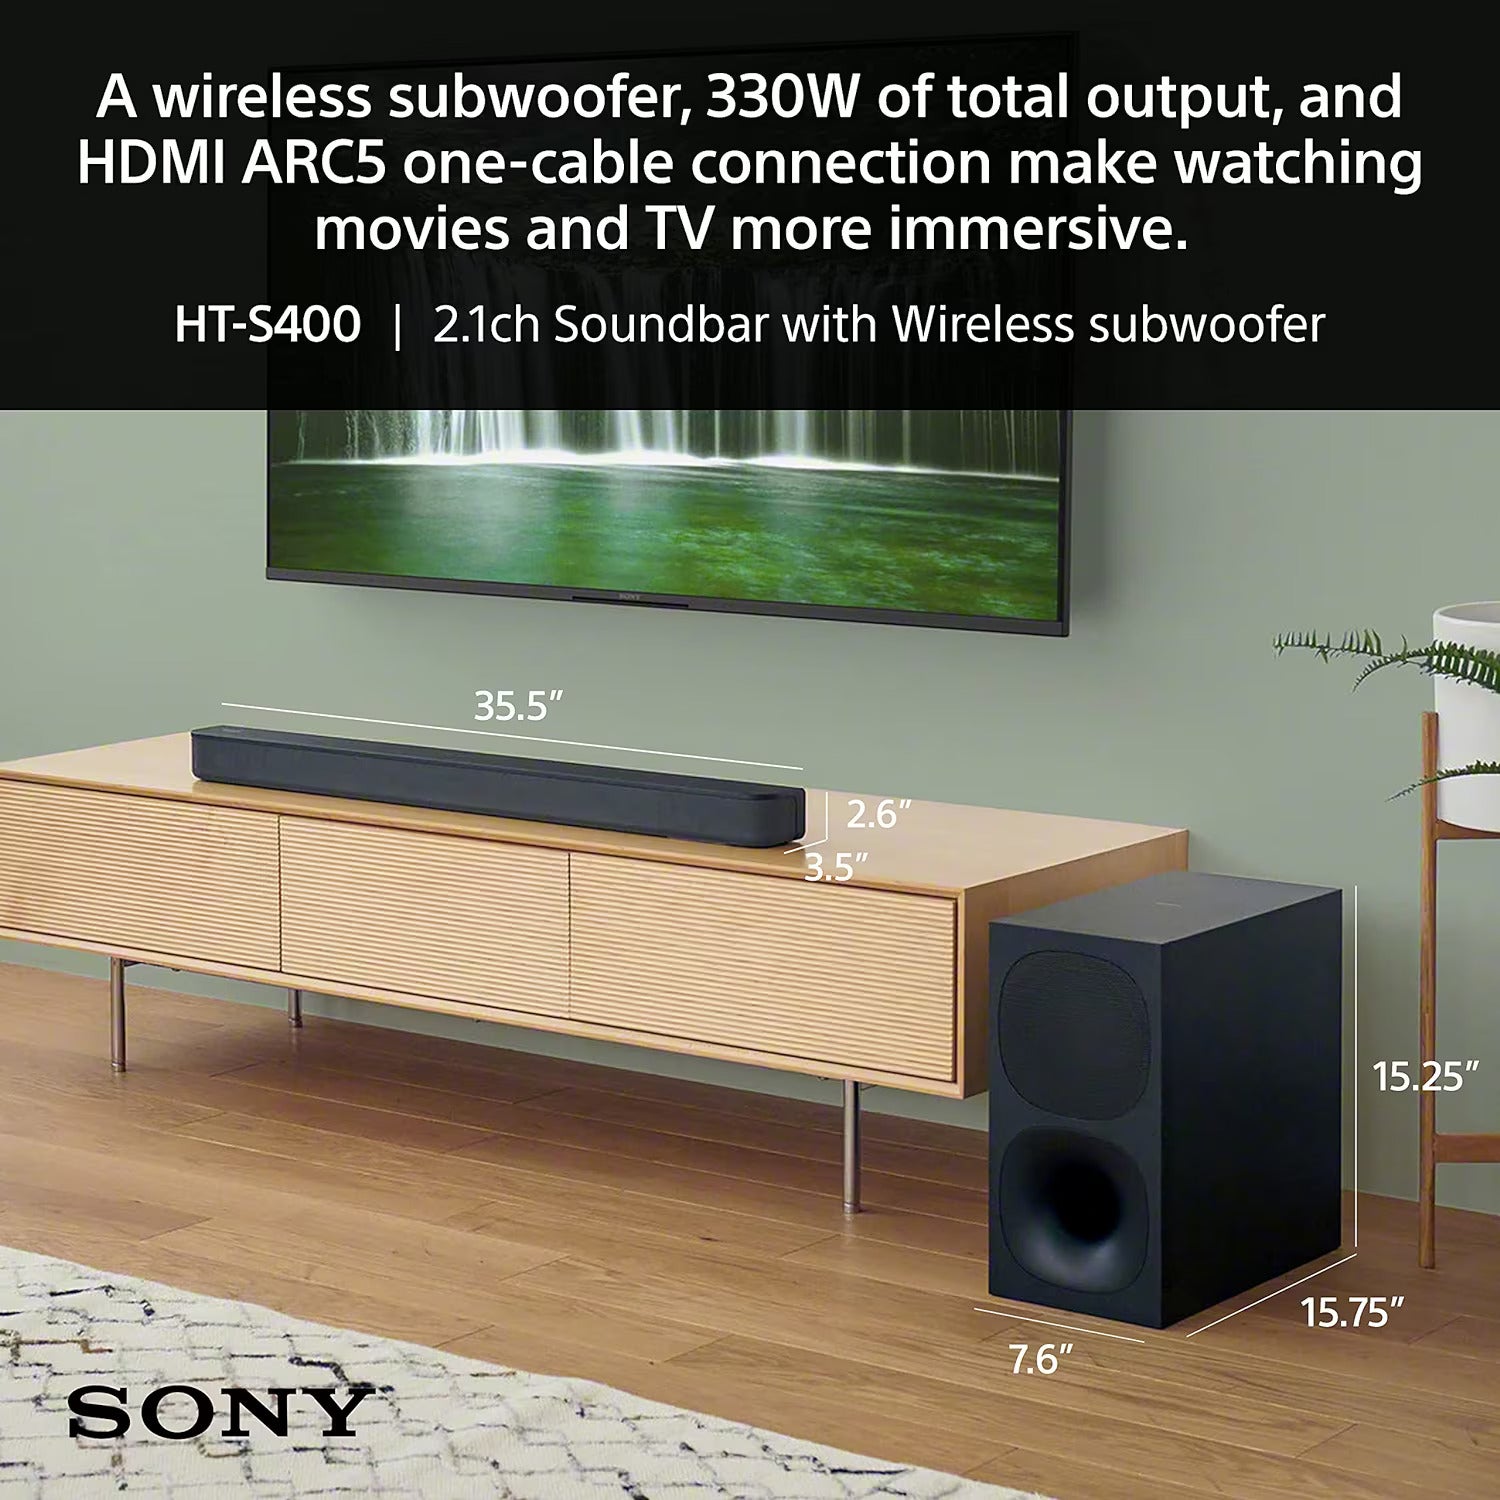 Sony HT-S400 330W 2.1ch Soundbar with Powerful Wireless subwoofer (Refurbished - 90 Days Warranty)